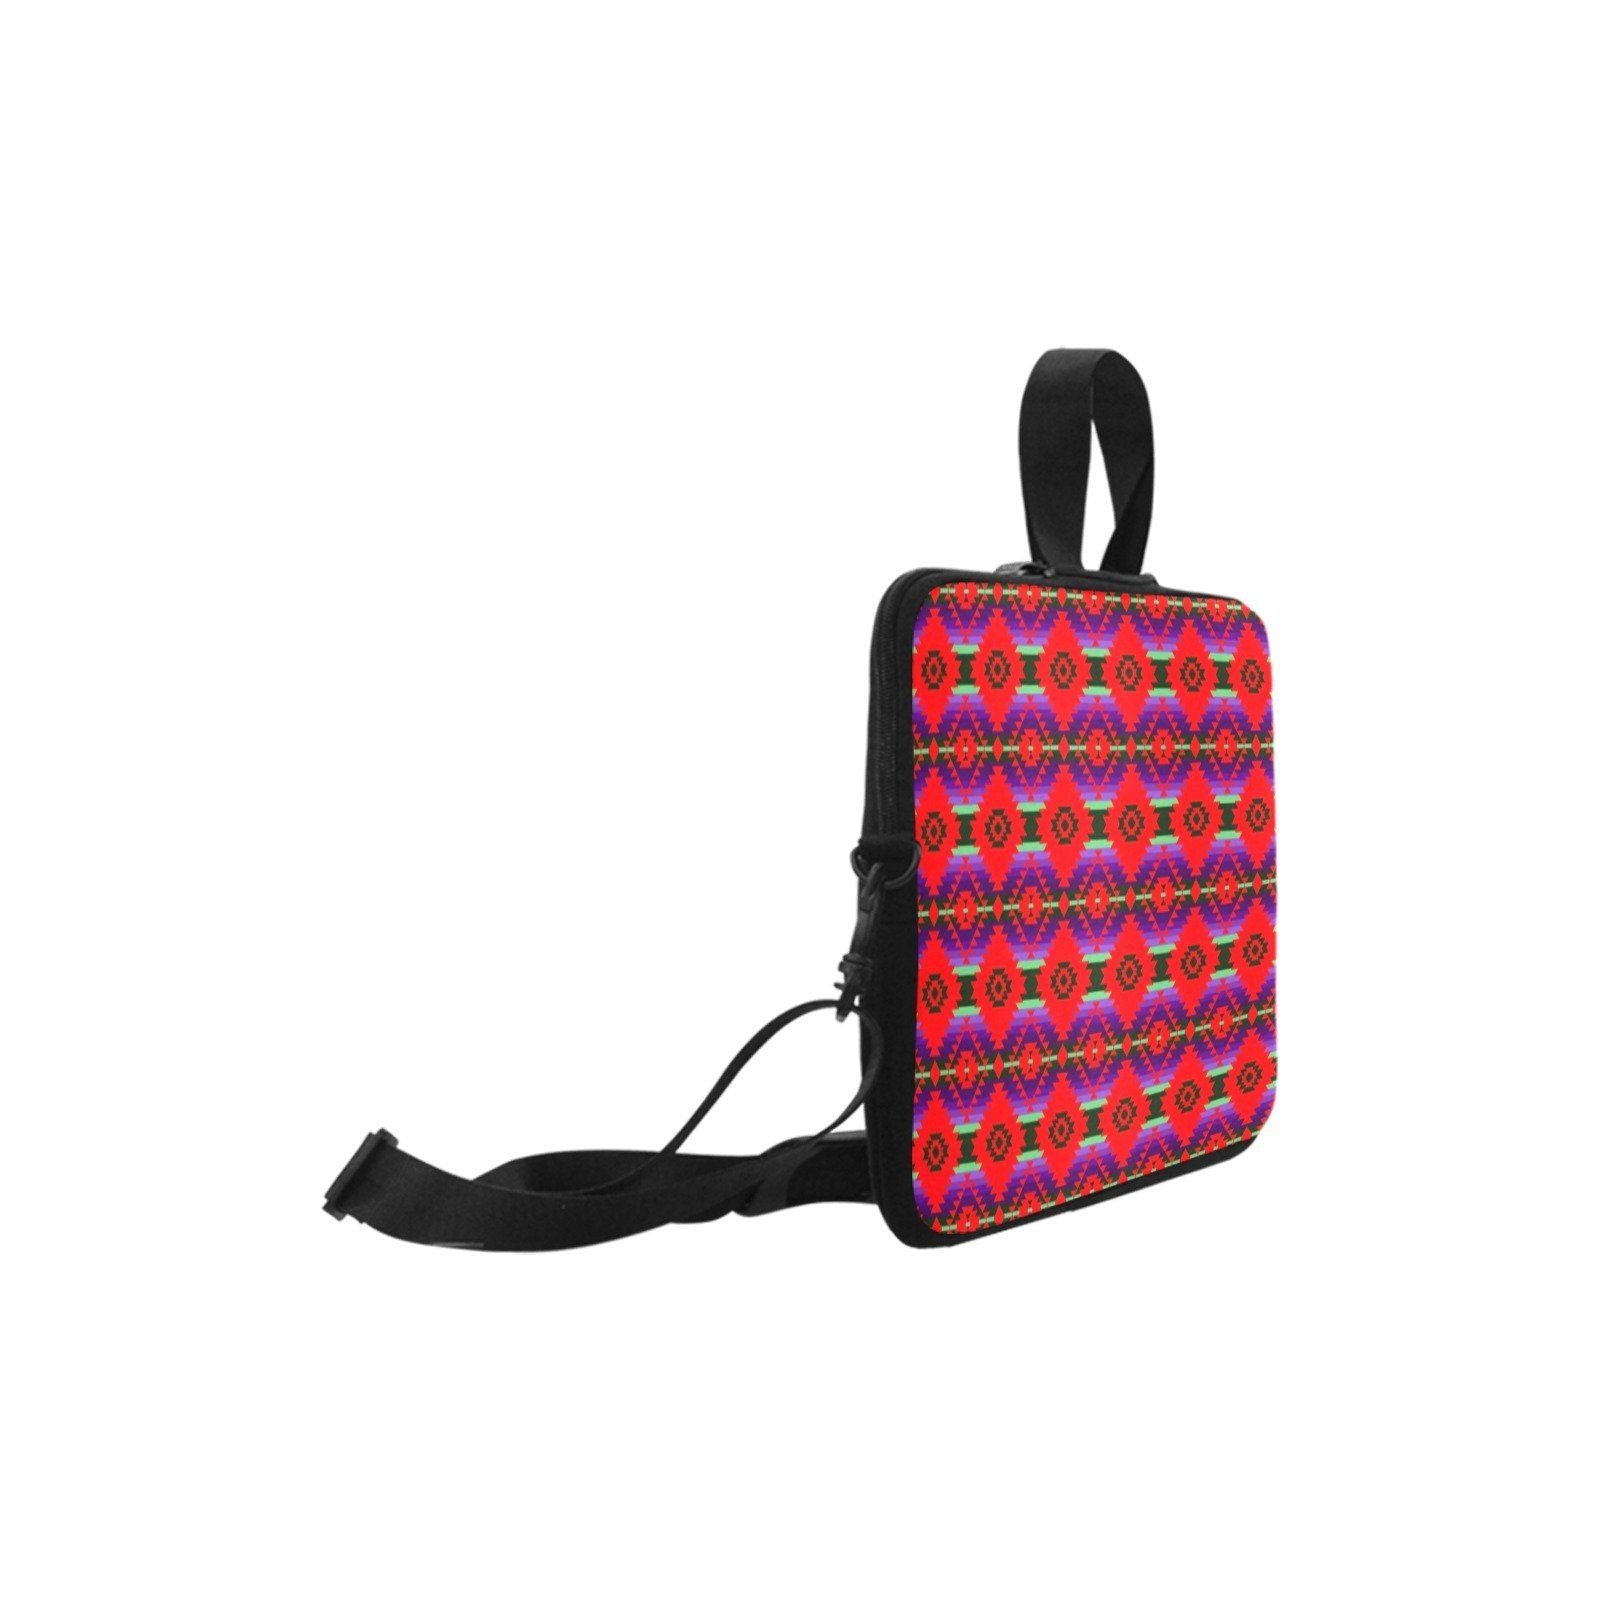 Cree Confederacy Chicken Dance Laptop Handbags 10" bag e-joyer 